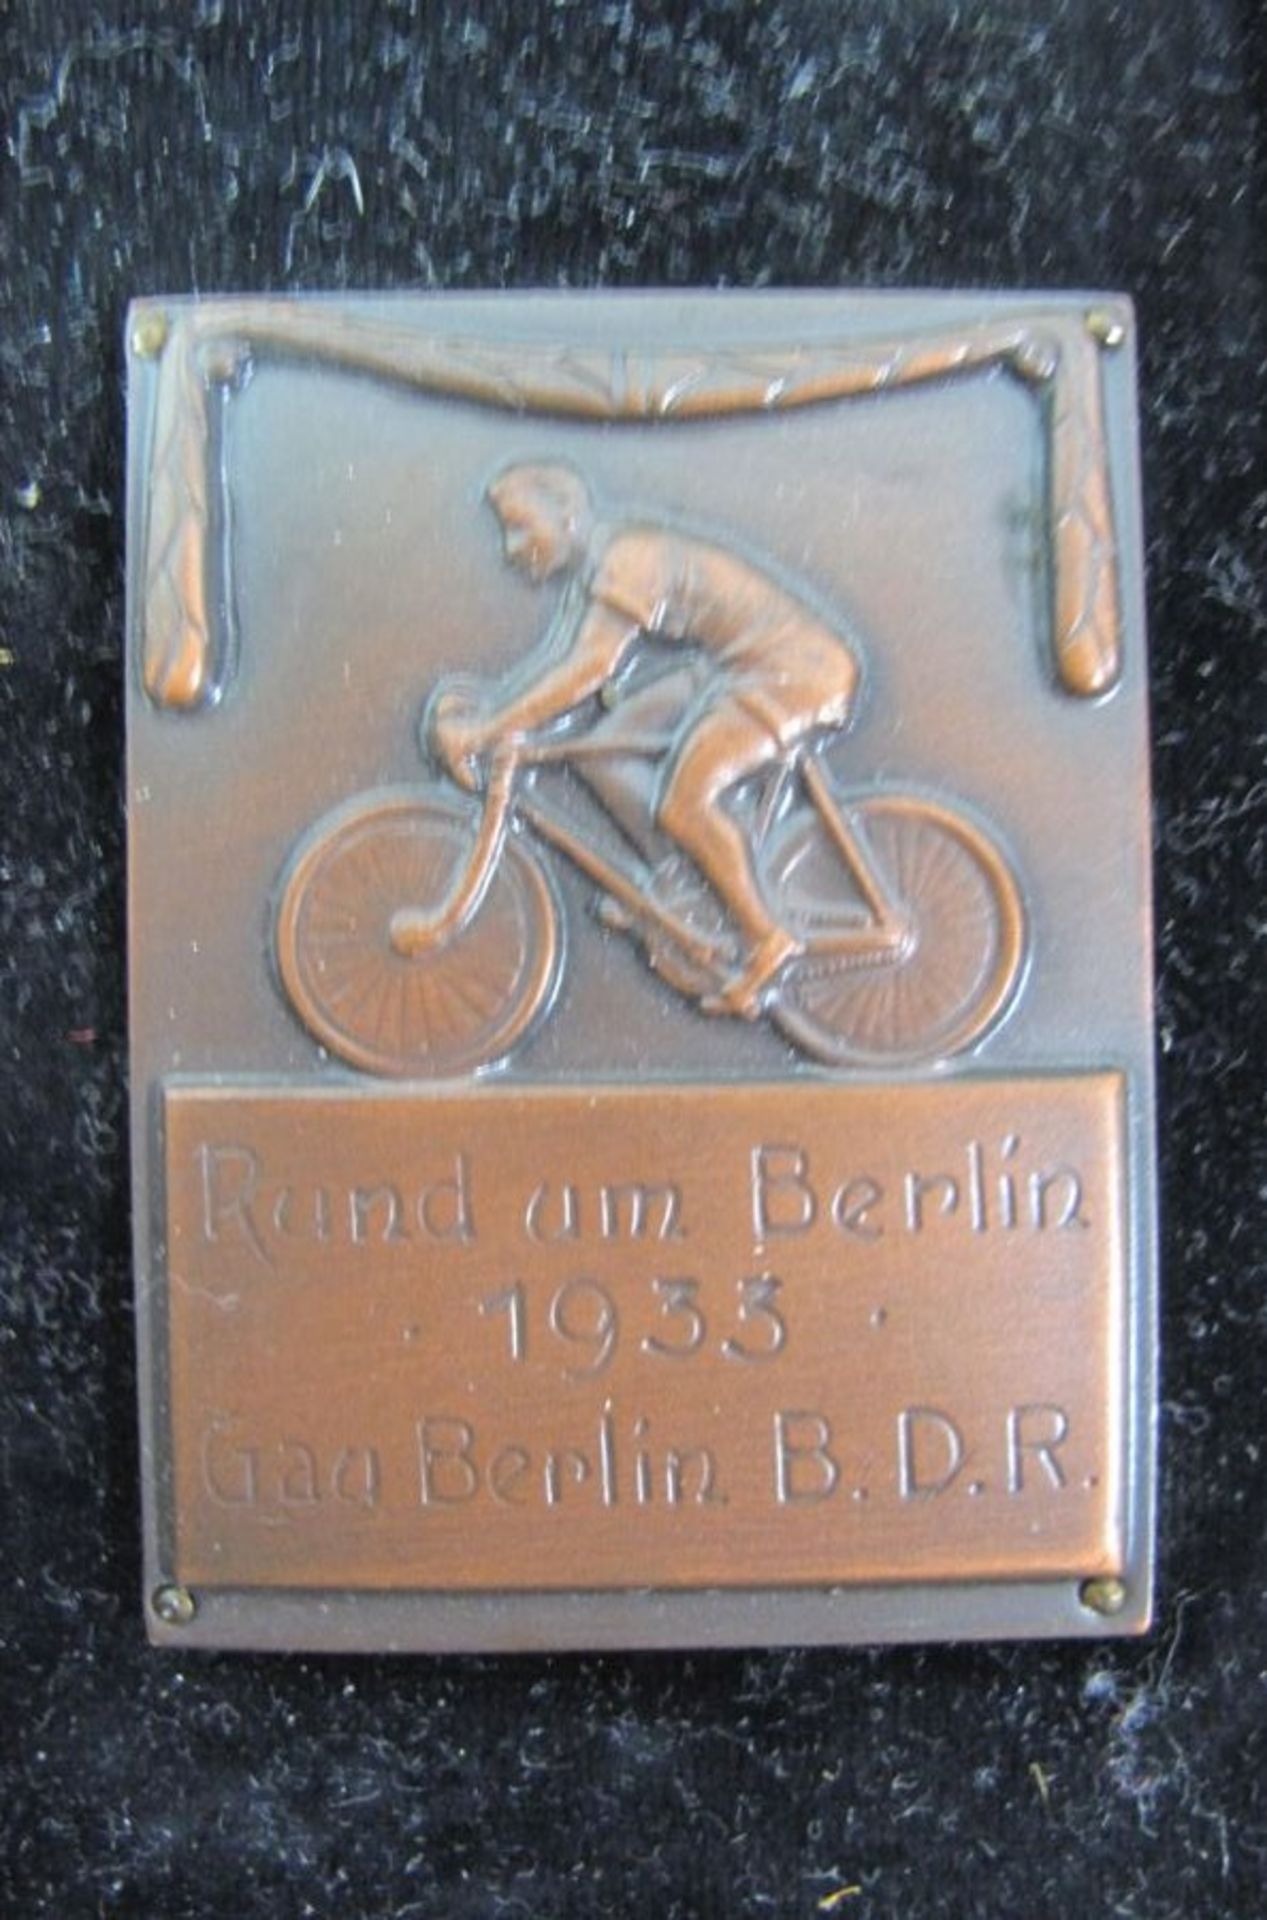 Plakette mit Foto, Rund um Berlin, B.D.R. (Bund Deutscher Radfahrer), 1933, gerahmt, RG 14 x 10, - Bild 2 aus 3